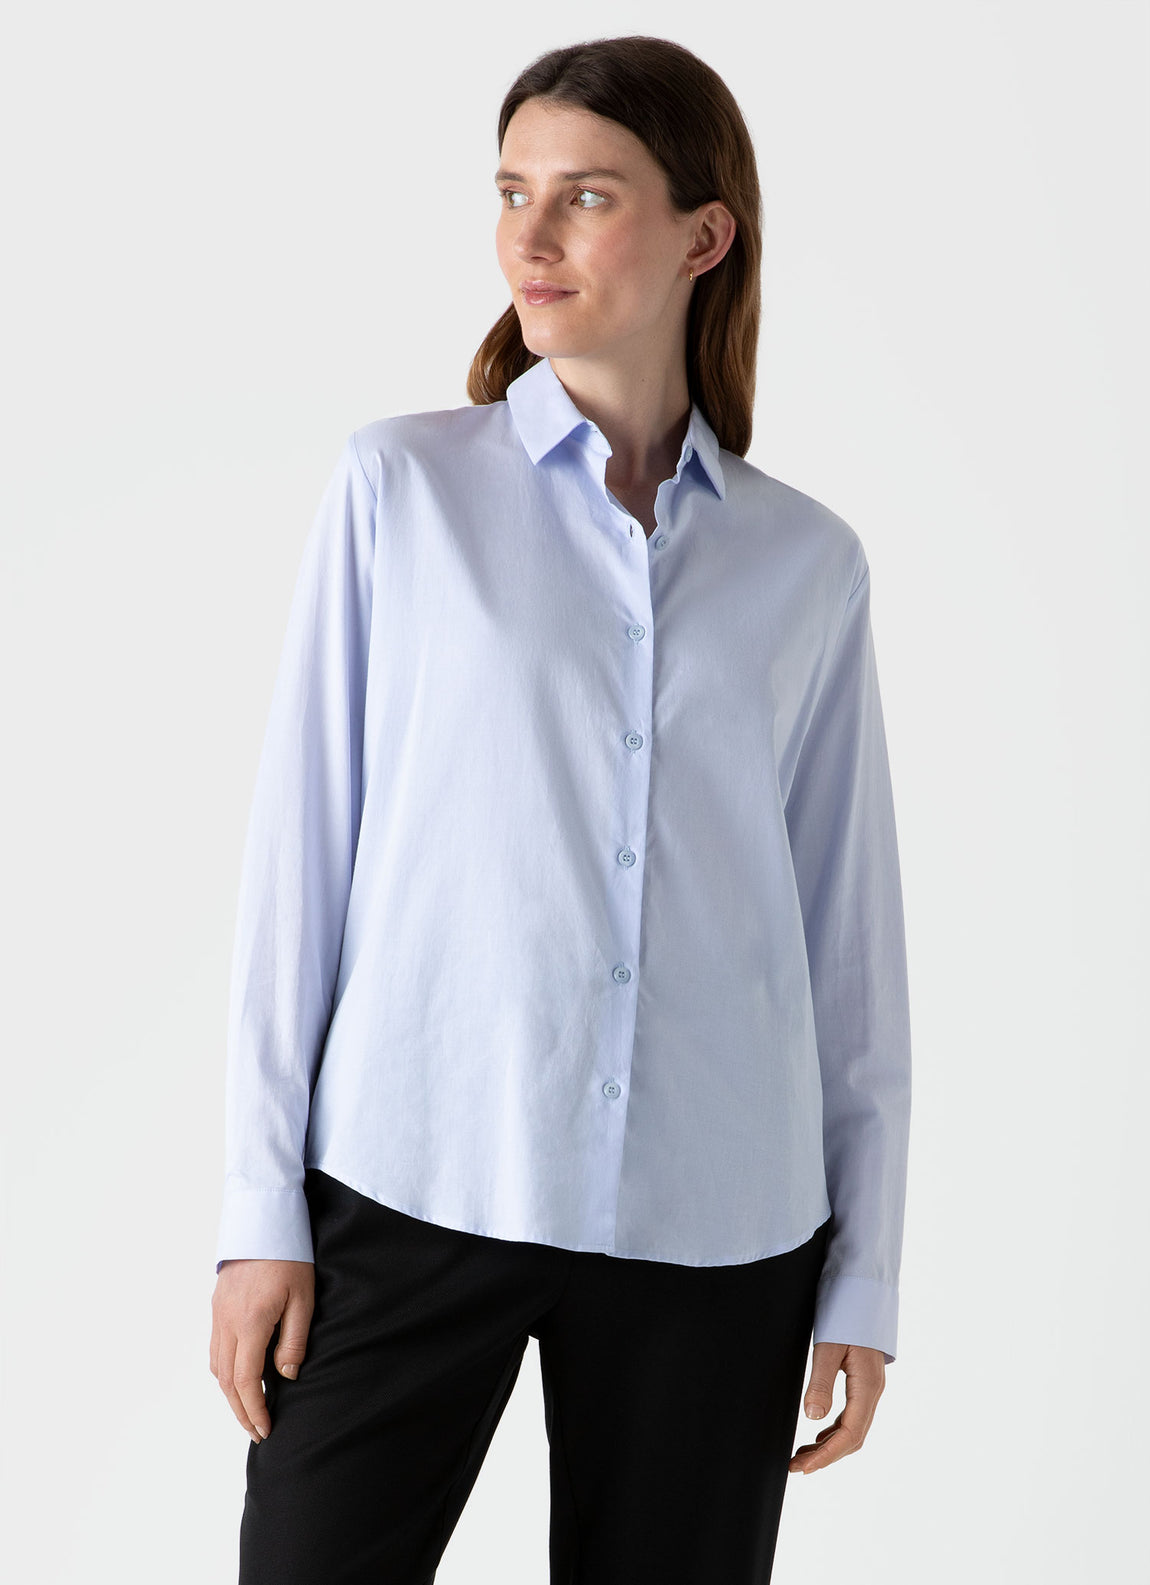 Women's Cotton Shirt in Blue | Sunspel